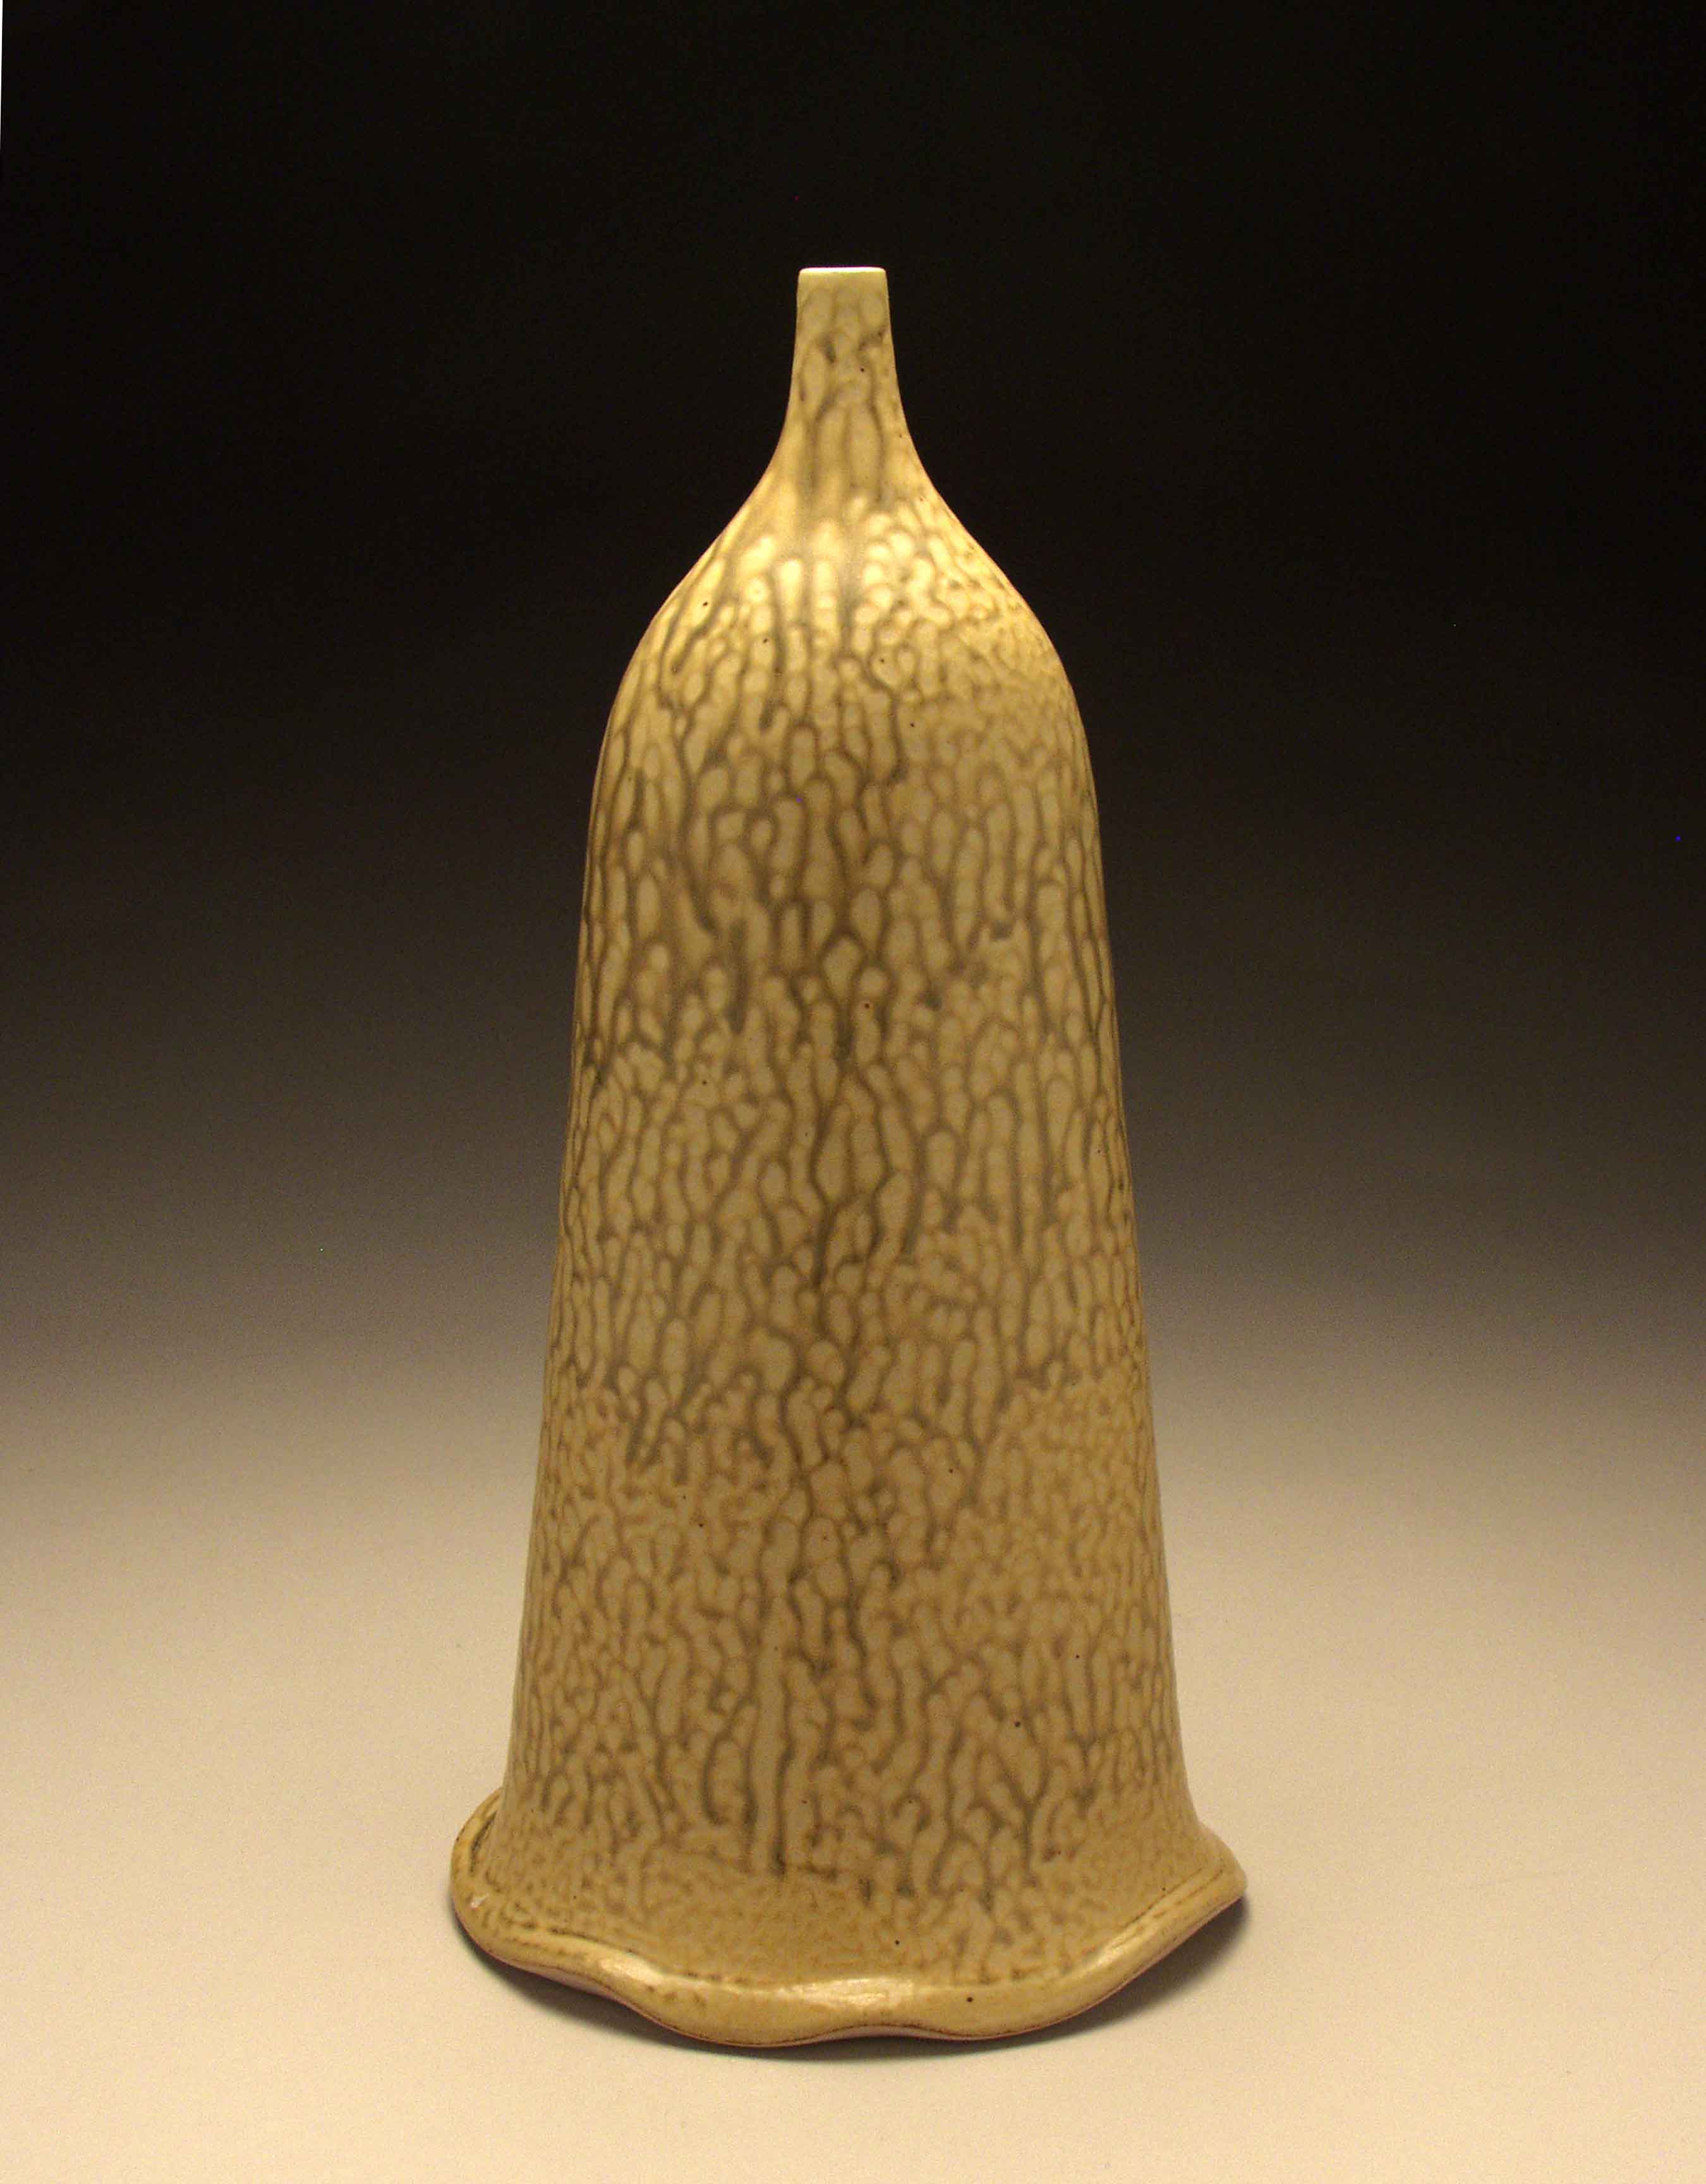 conner burns -  ash glazed oval bottle